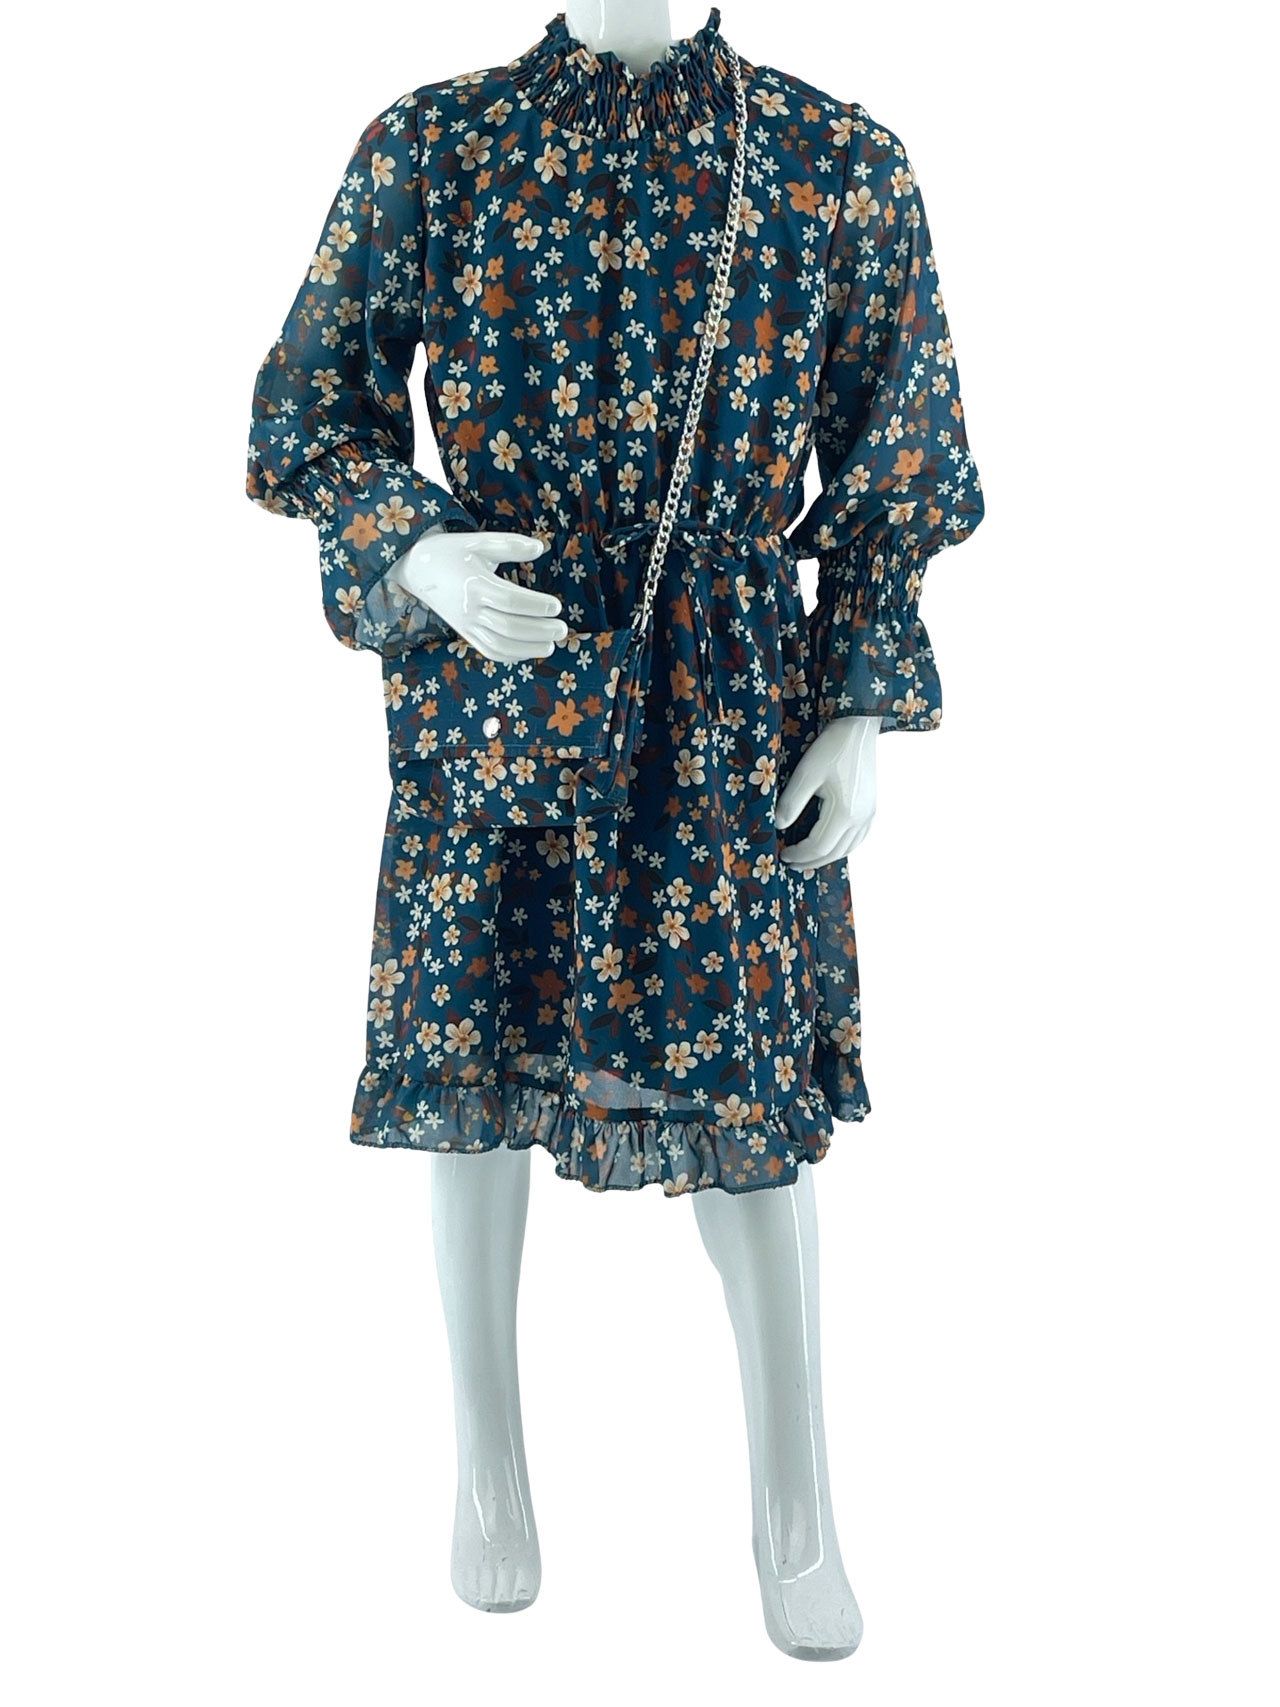 Φόρεμα κορίτσι floral ζορζέτα με τσαντάκι κωδ. 22277